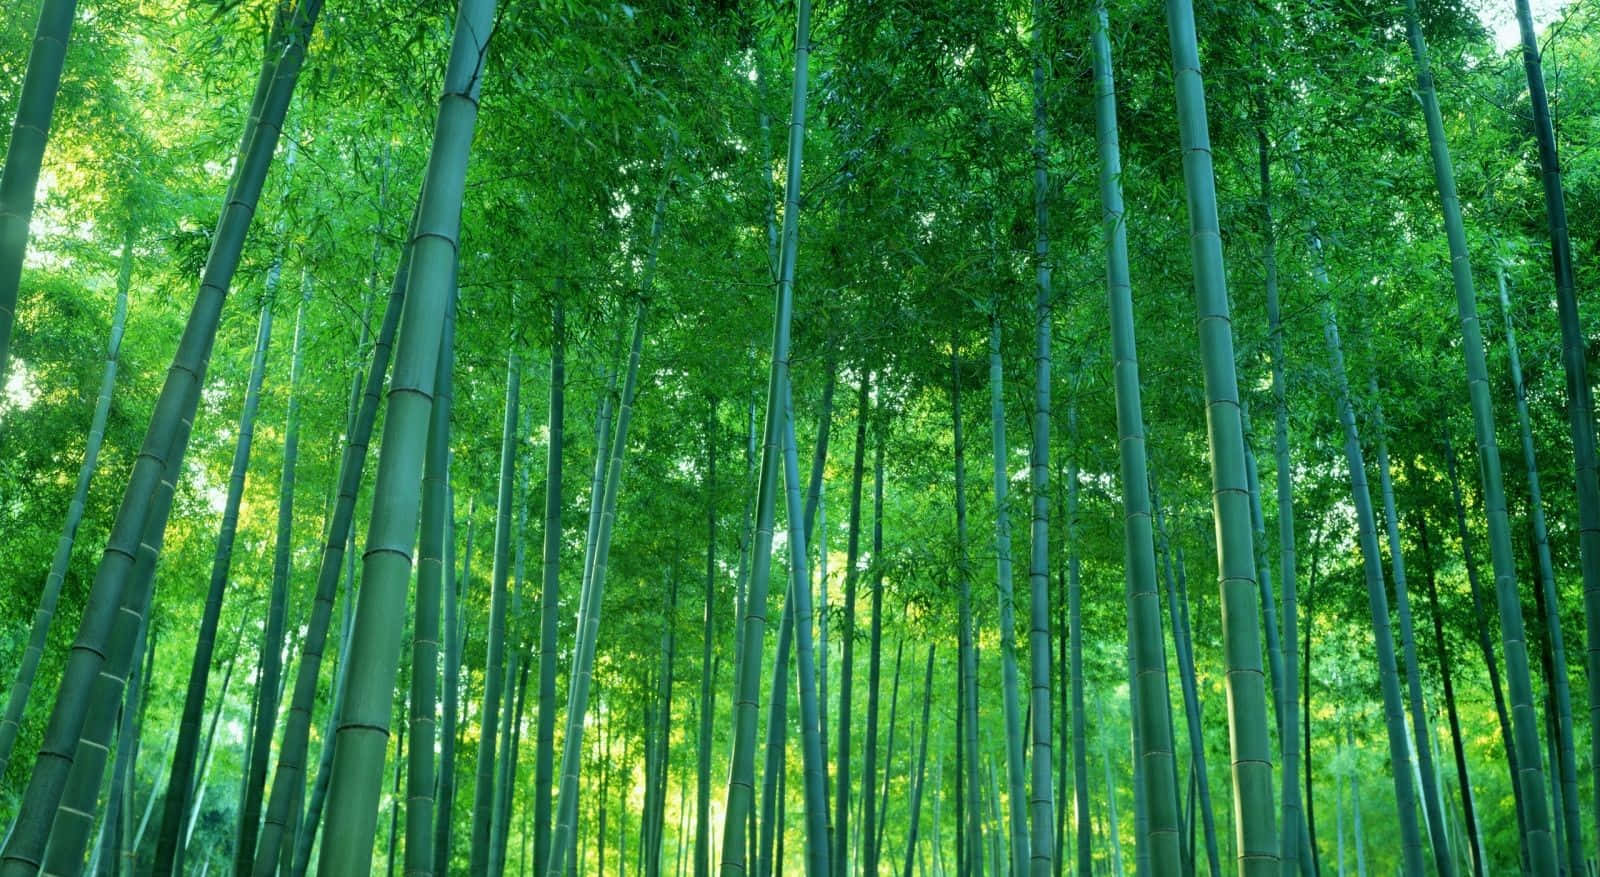 Unospolverio Di Alberi Di Bambù Punteggiano Uno Sfondo Verde Esotico.